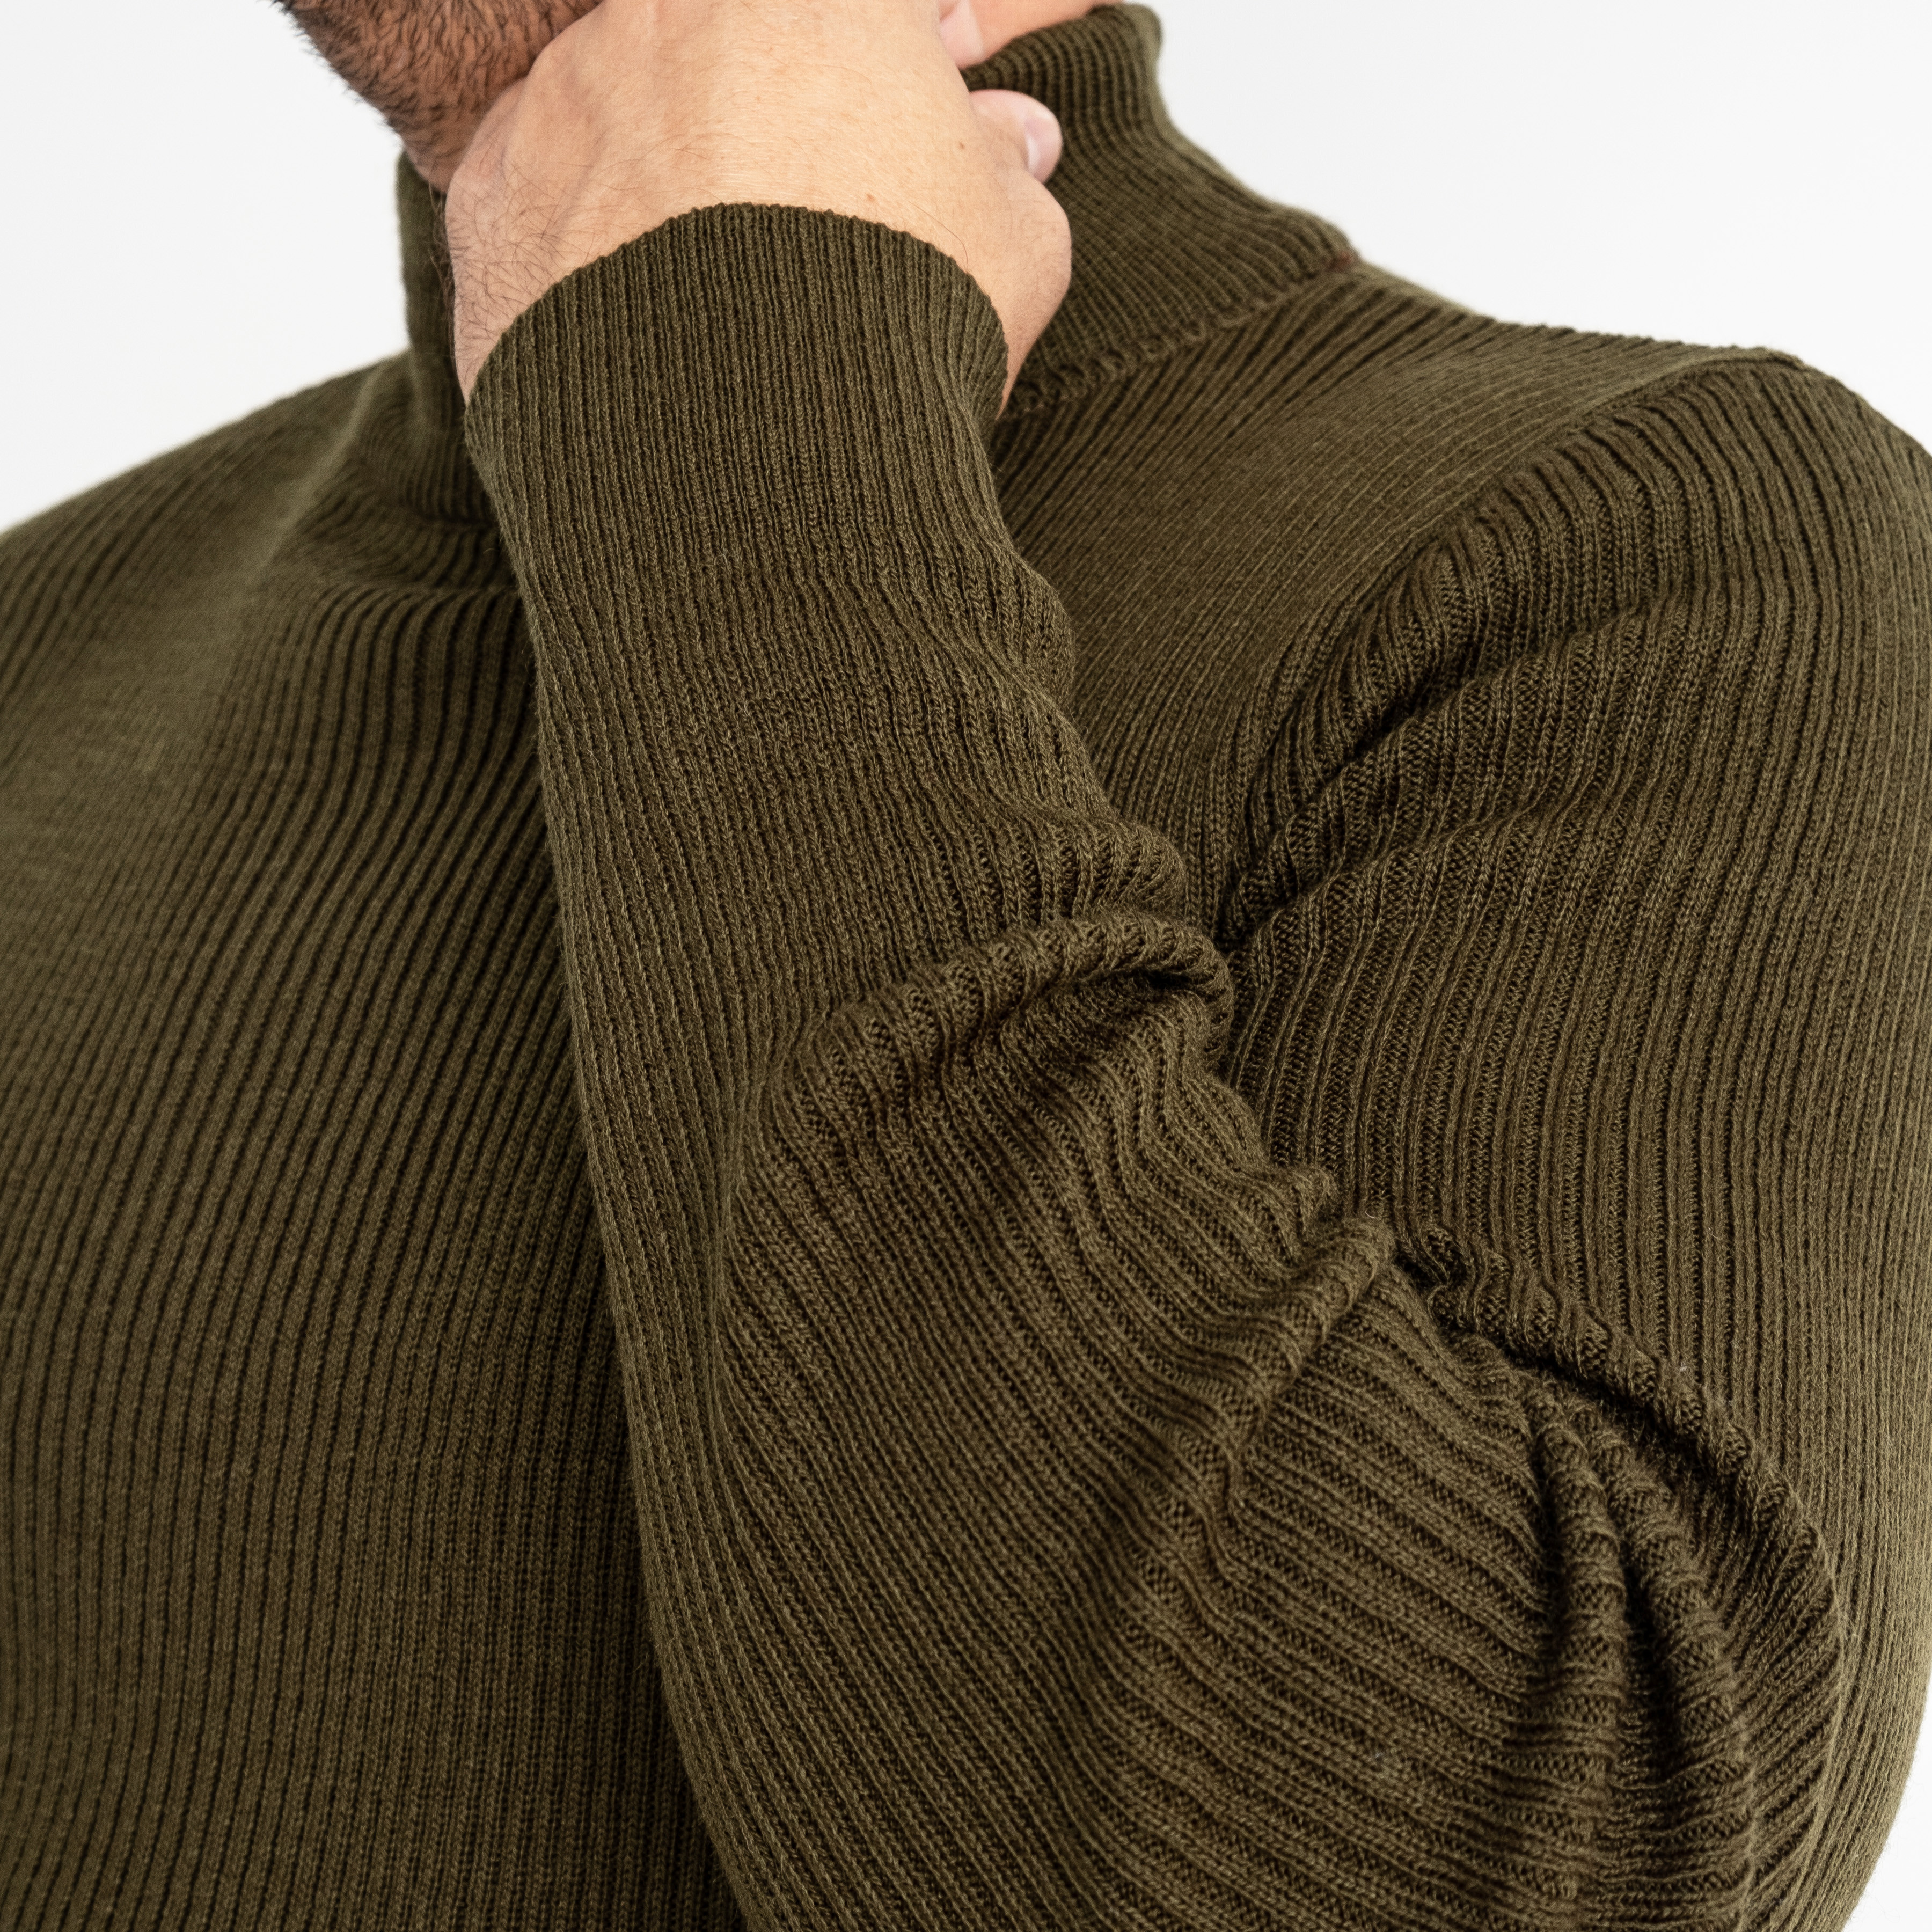 1070-7 Pamuk Park ХАКИ свитер мужской машинная вязка (3 ед. размеры: M.L.XL)